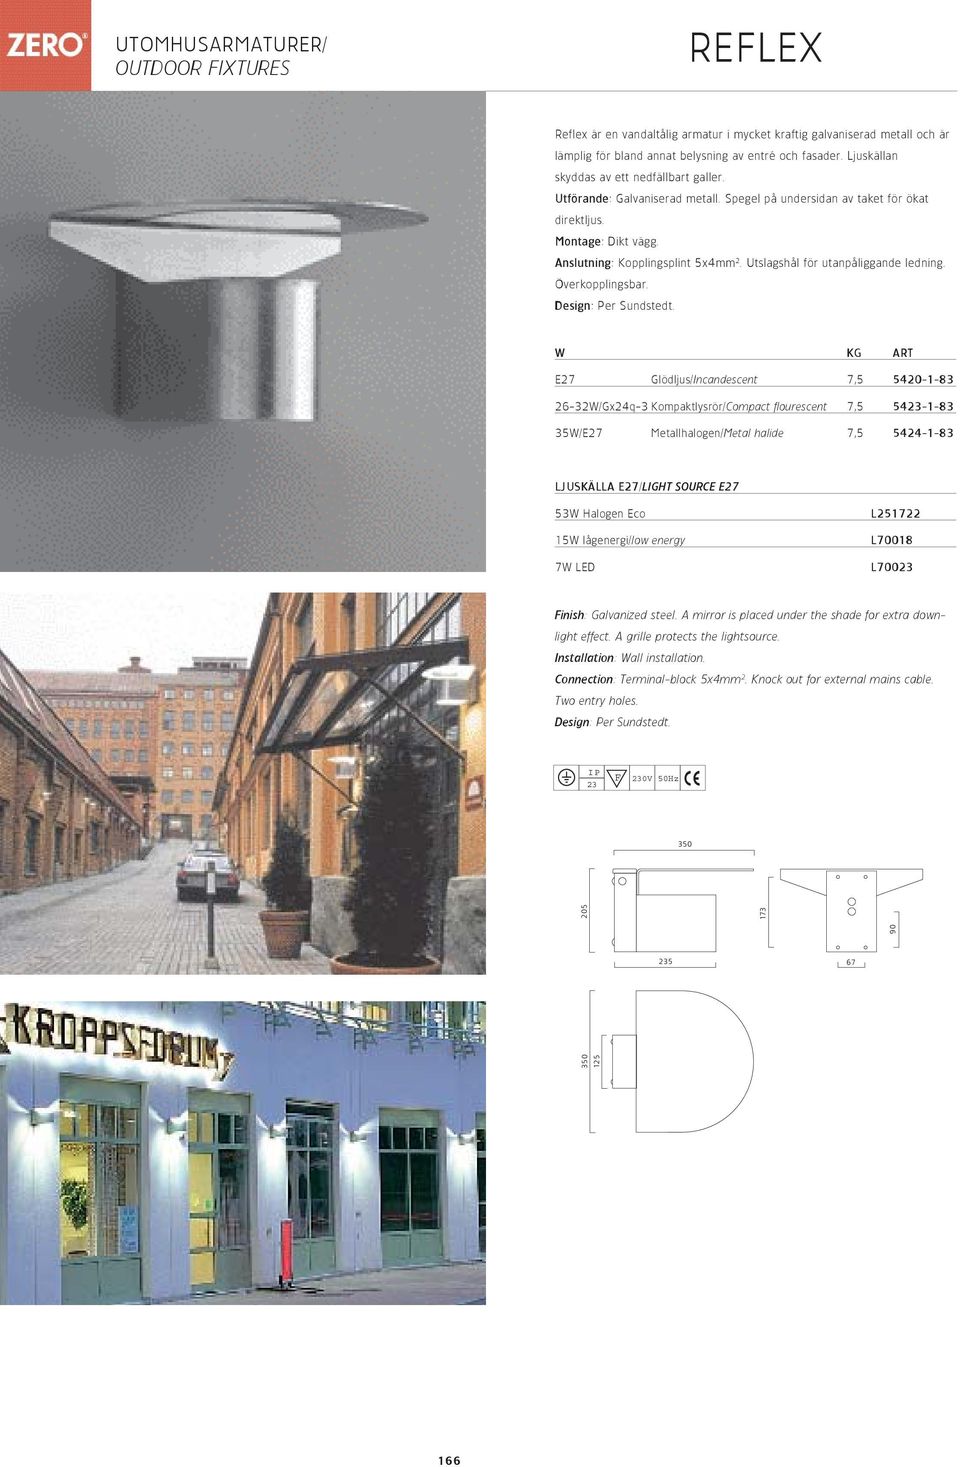 Utslagshål för utanpåliggande ledning. Överkopplingsbar. Design: Per Sundstedt.